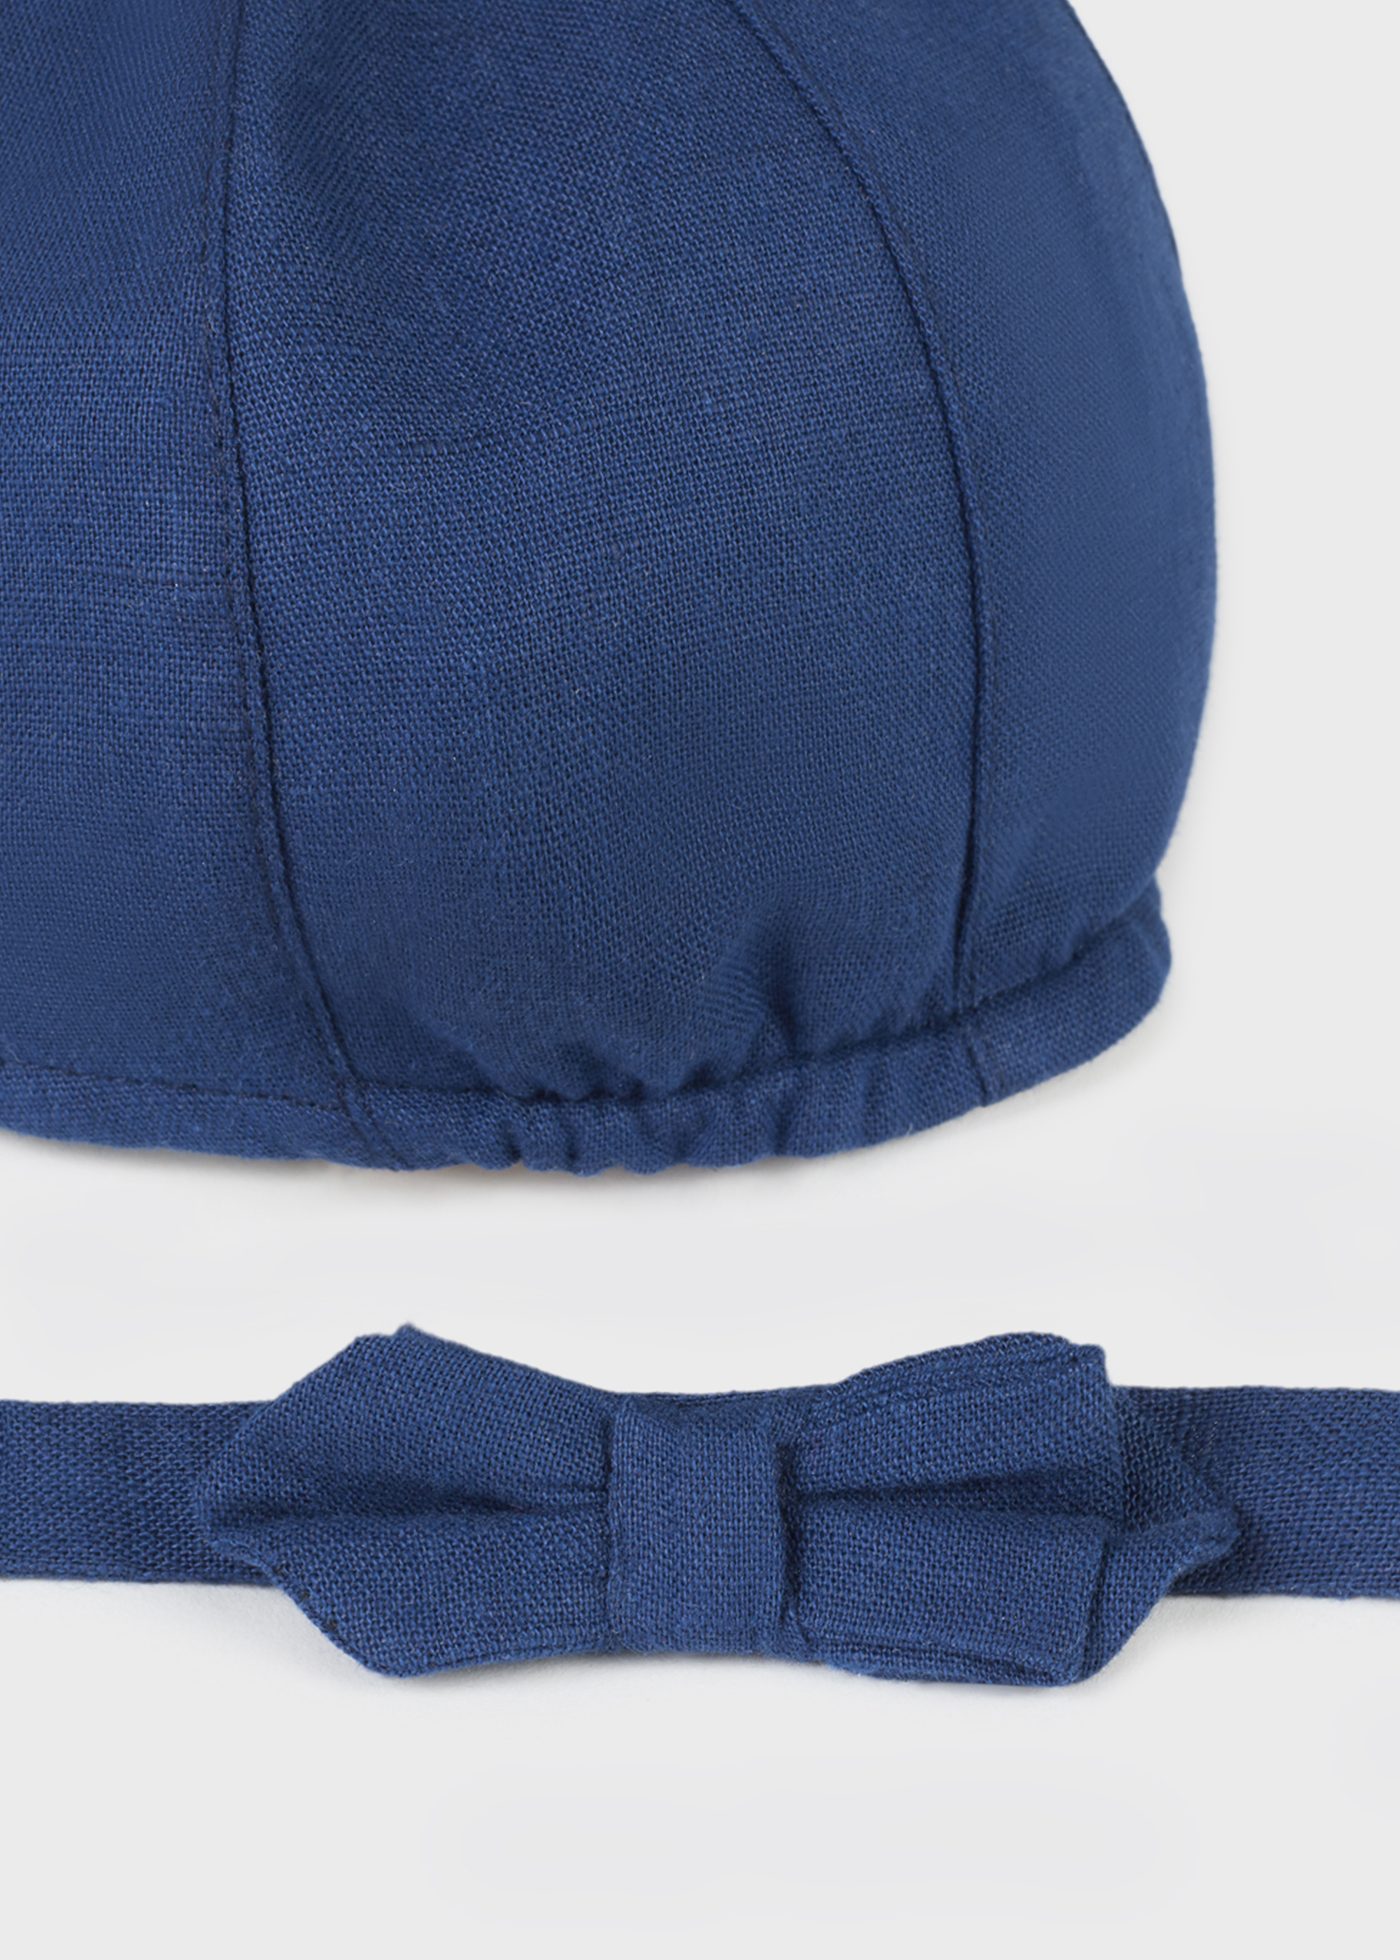 Newborn Paper Cap and Bow Tie Set